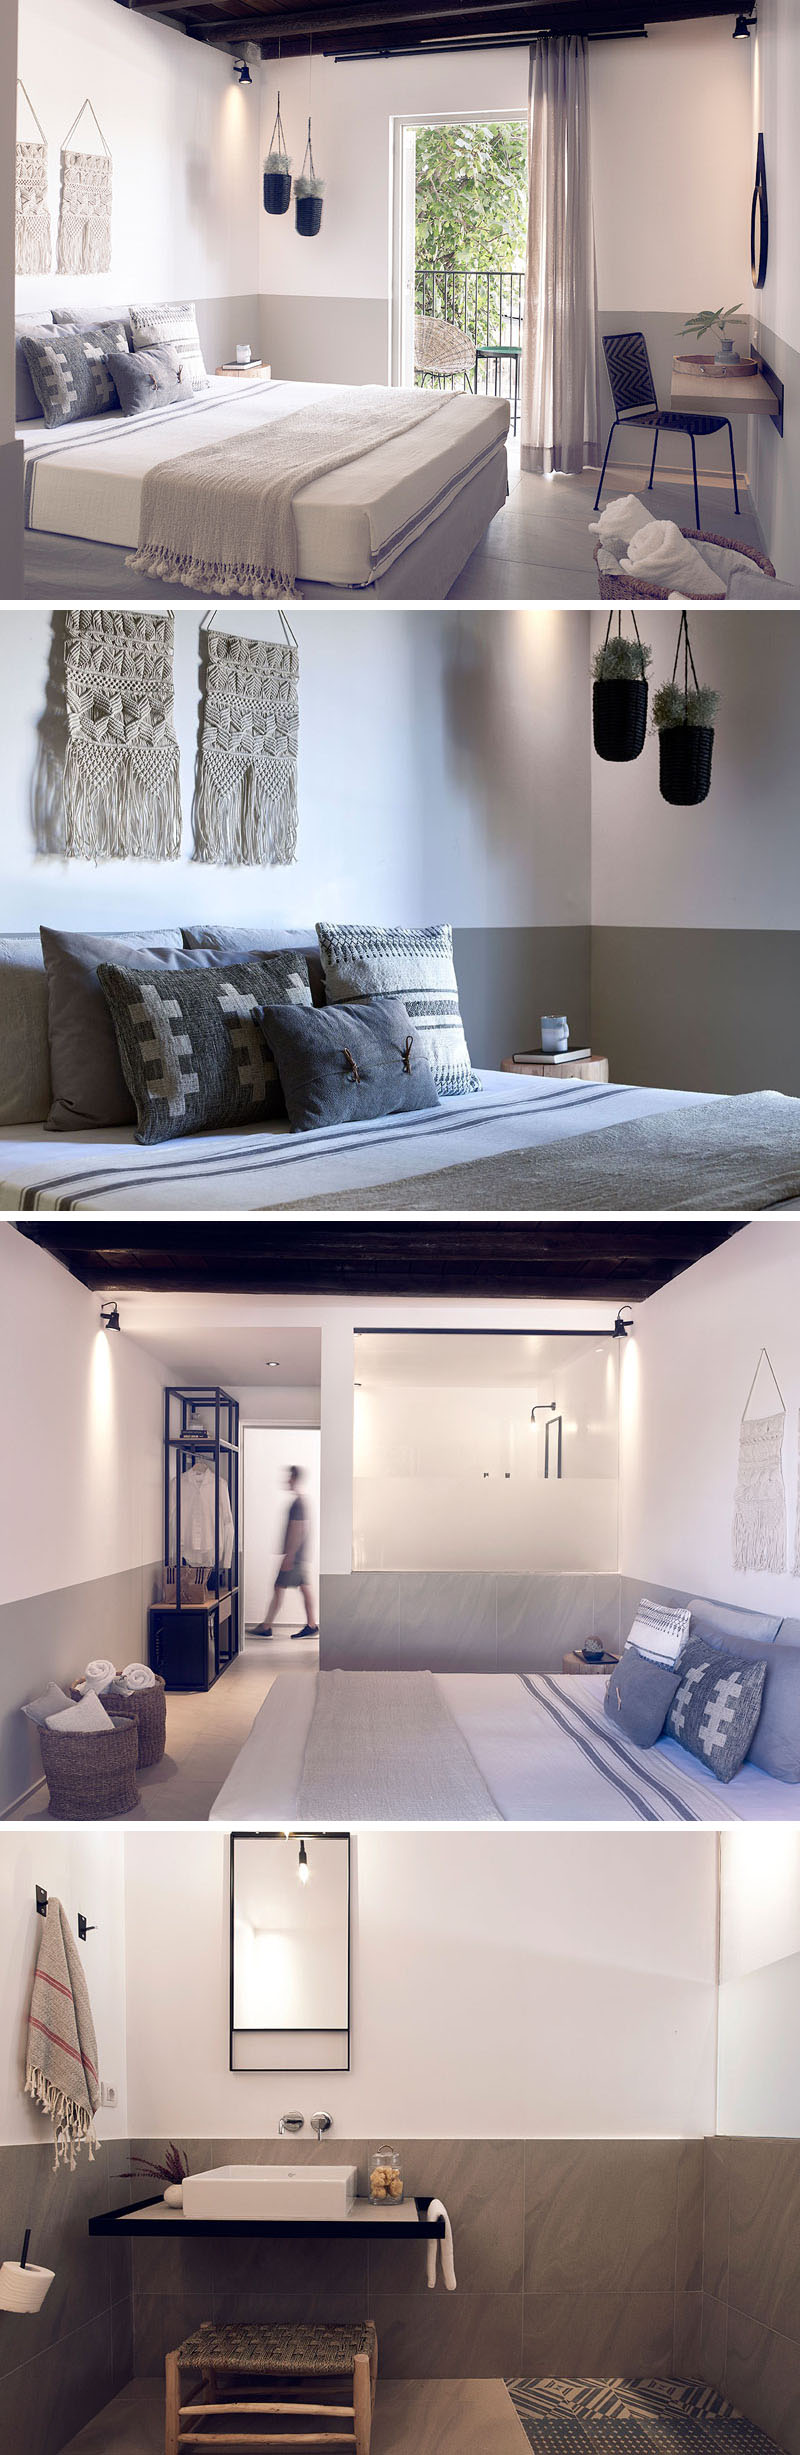 modern-hotel-room-bedroom-design-210217-1010-08